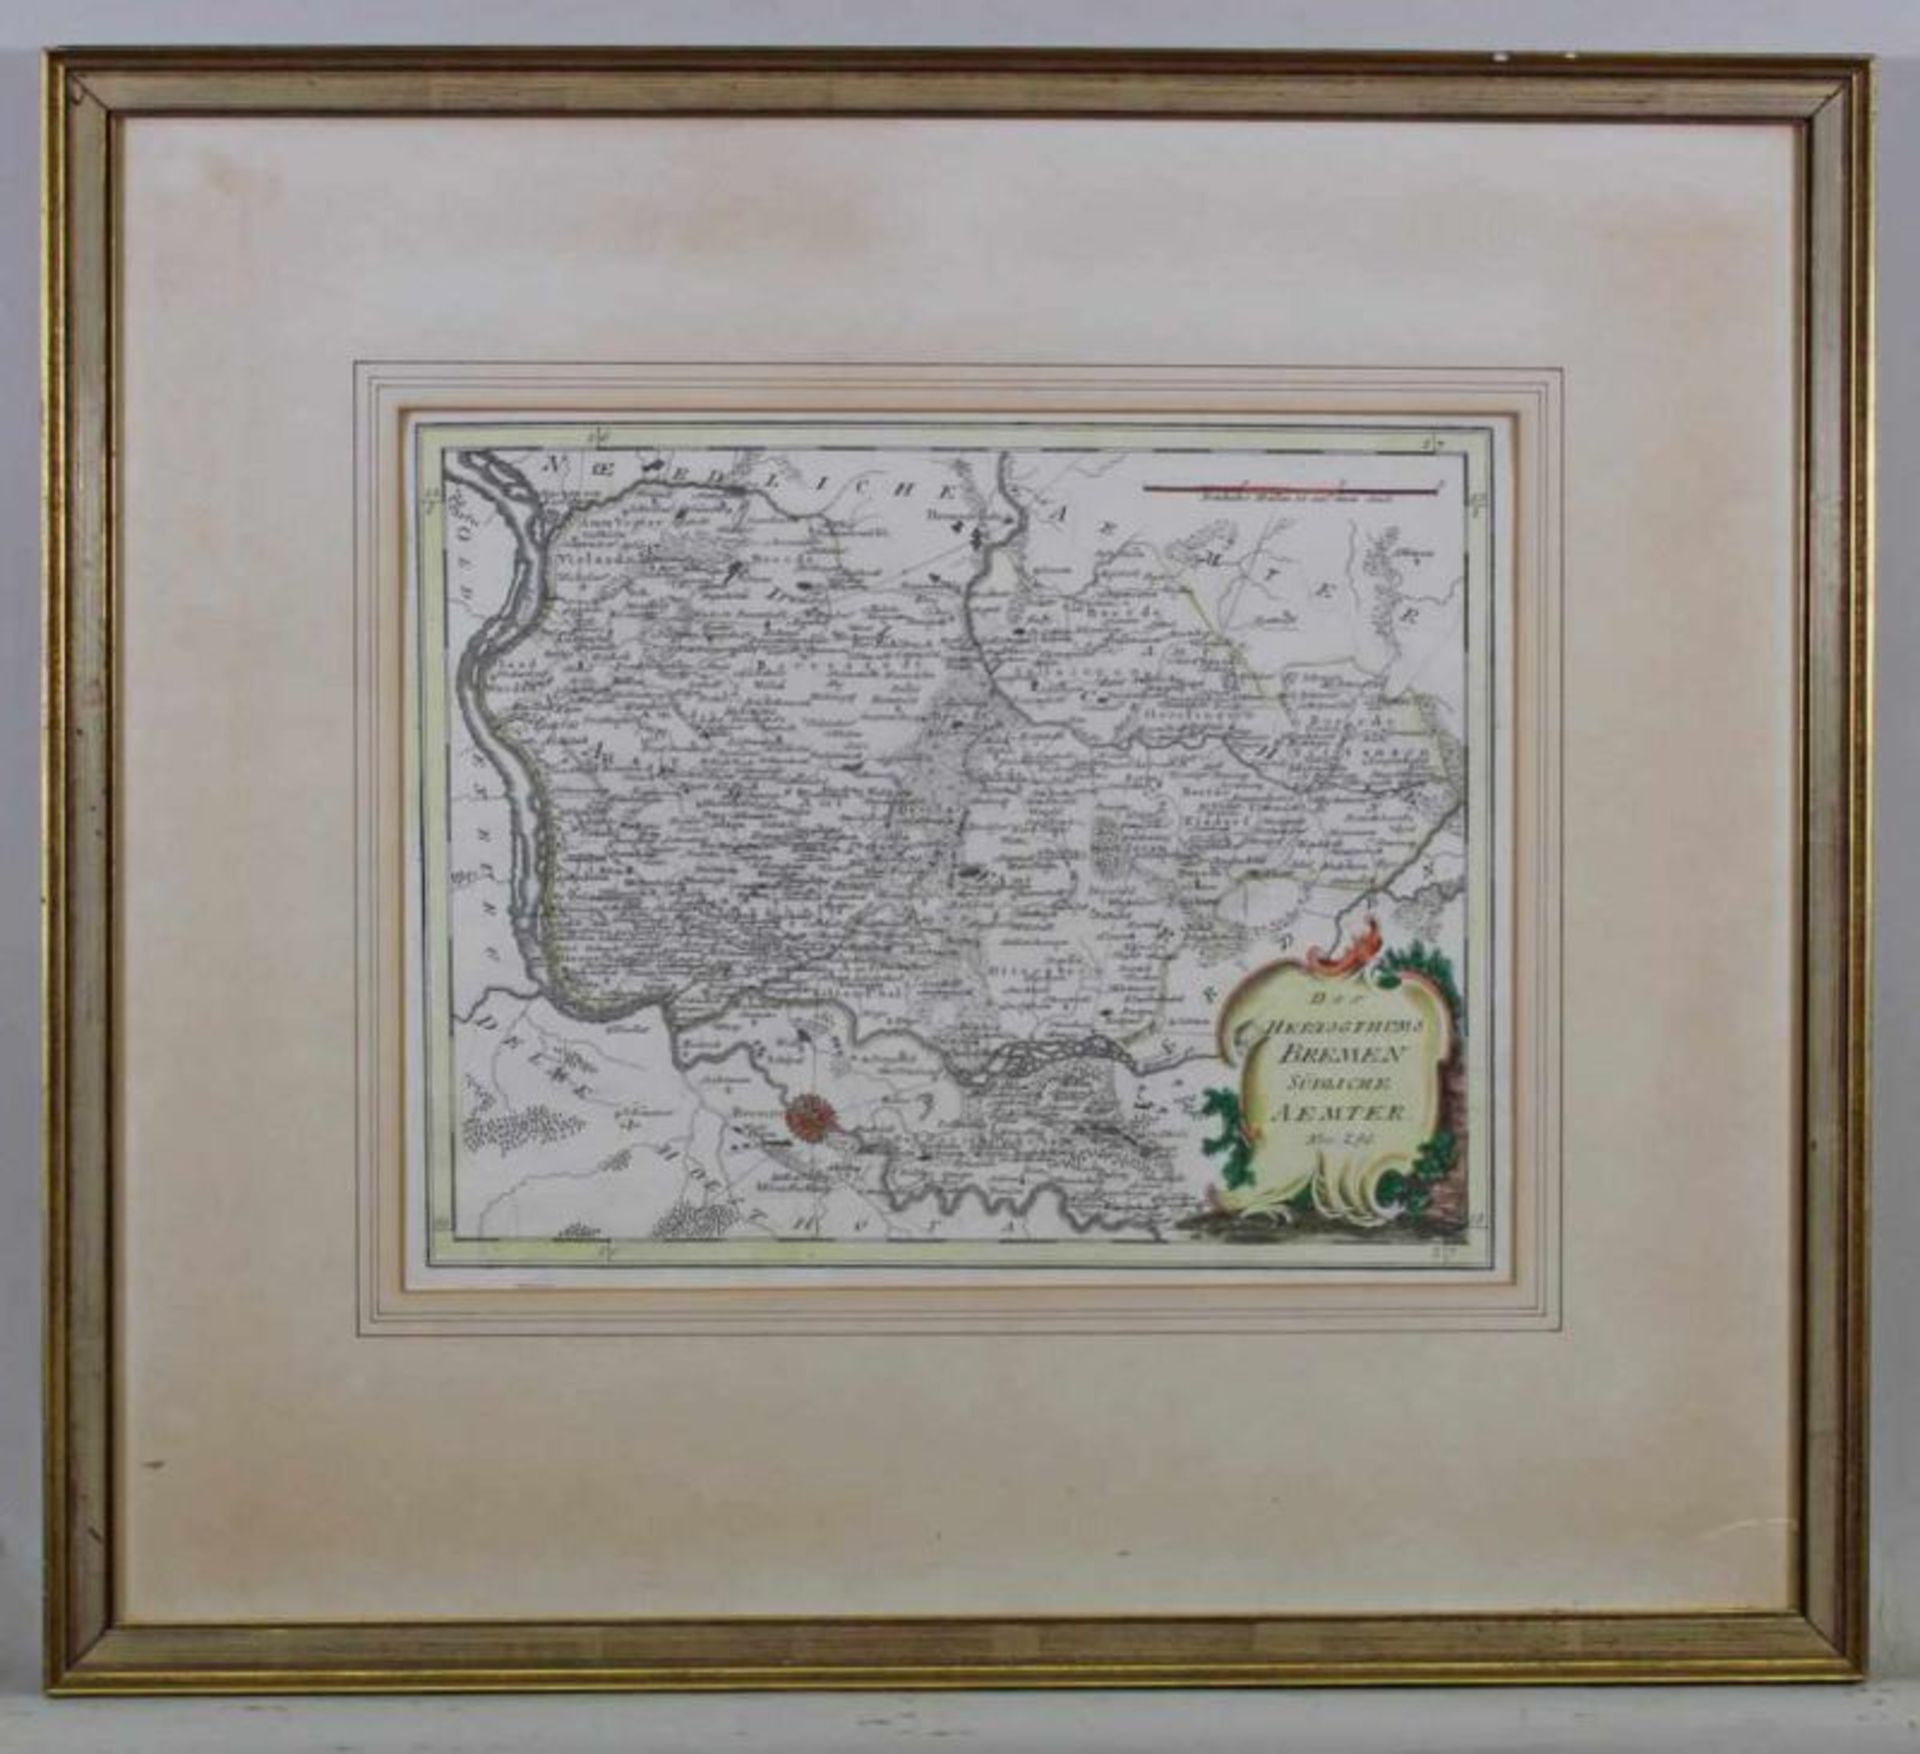 3 teilkolorierte Kupferstichkarten, "Bremen", "Zwey Brücken", "Bodensee", ca. 26 x 30 cm (P.a.), - Image 2 of 3